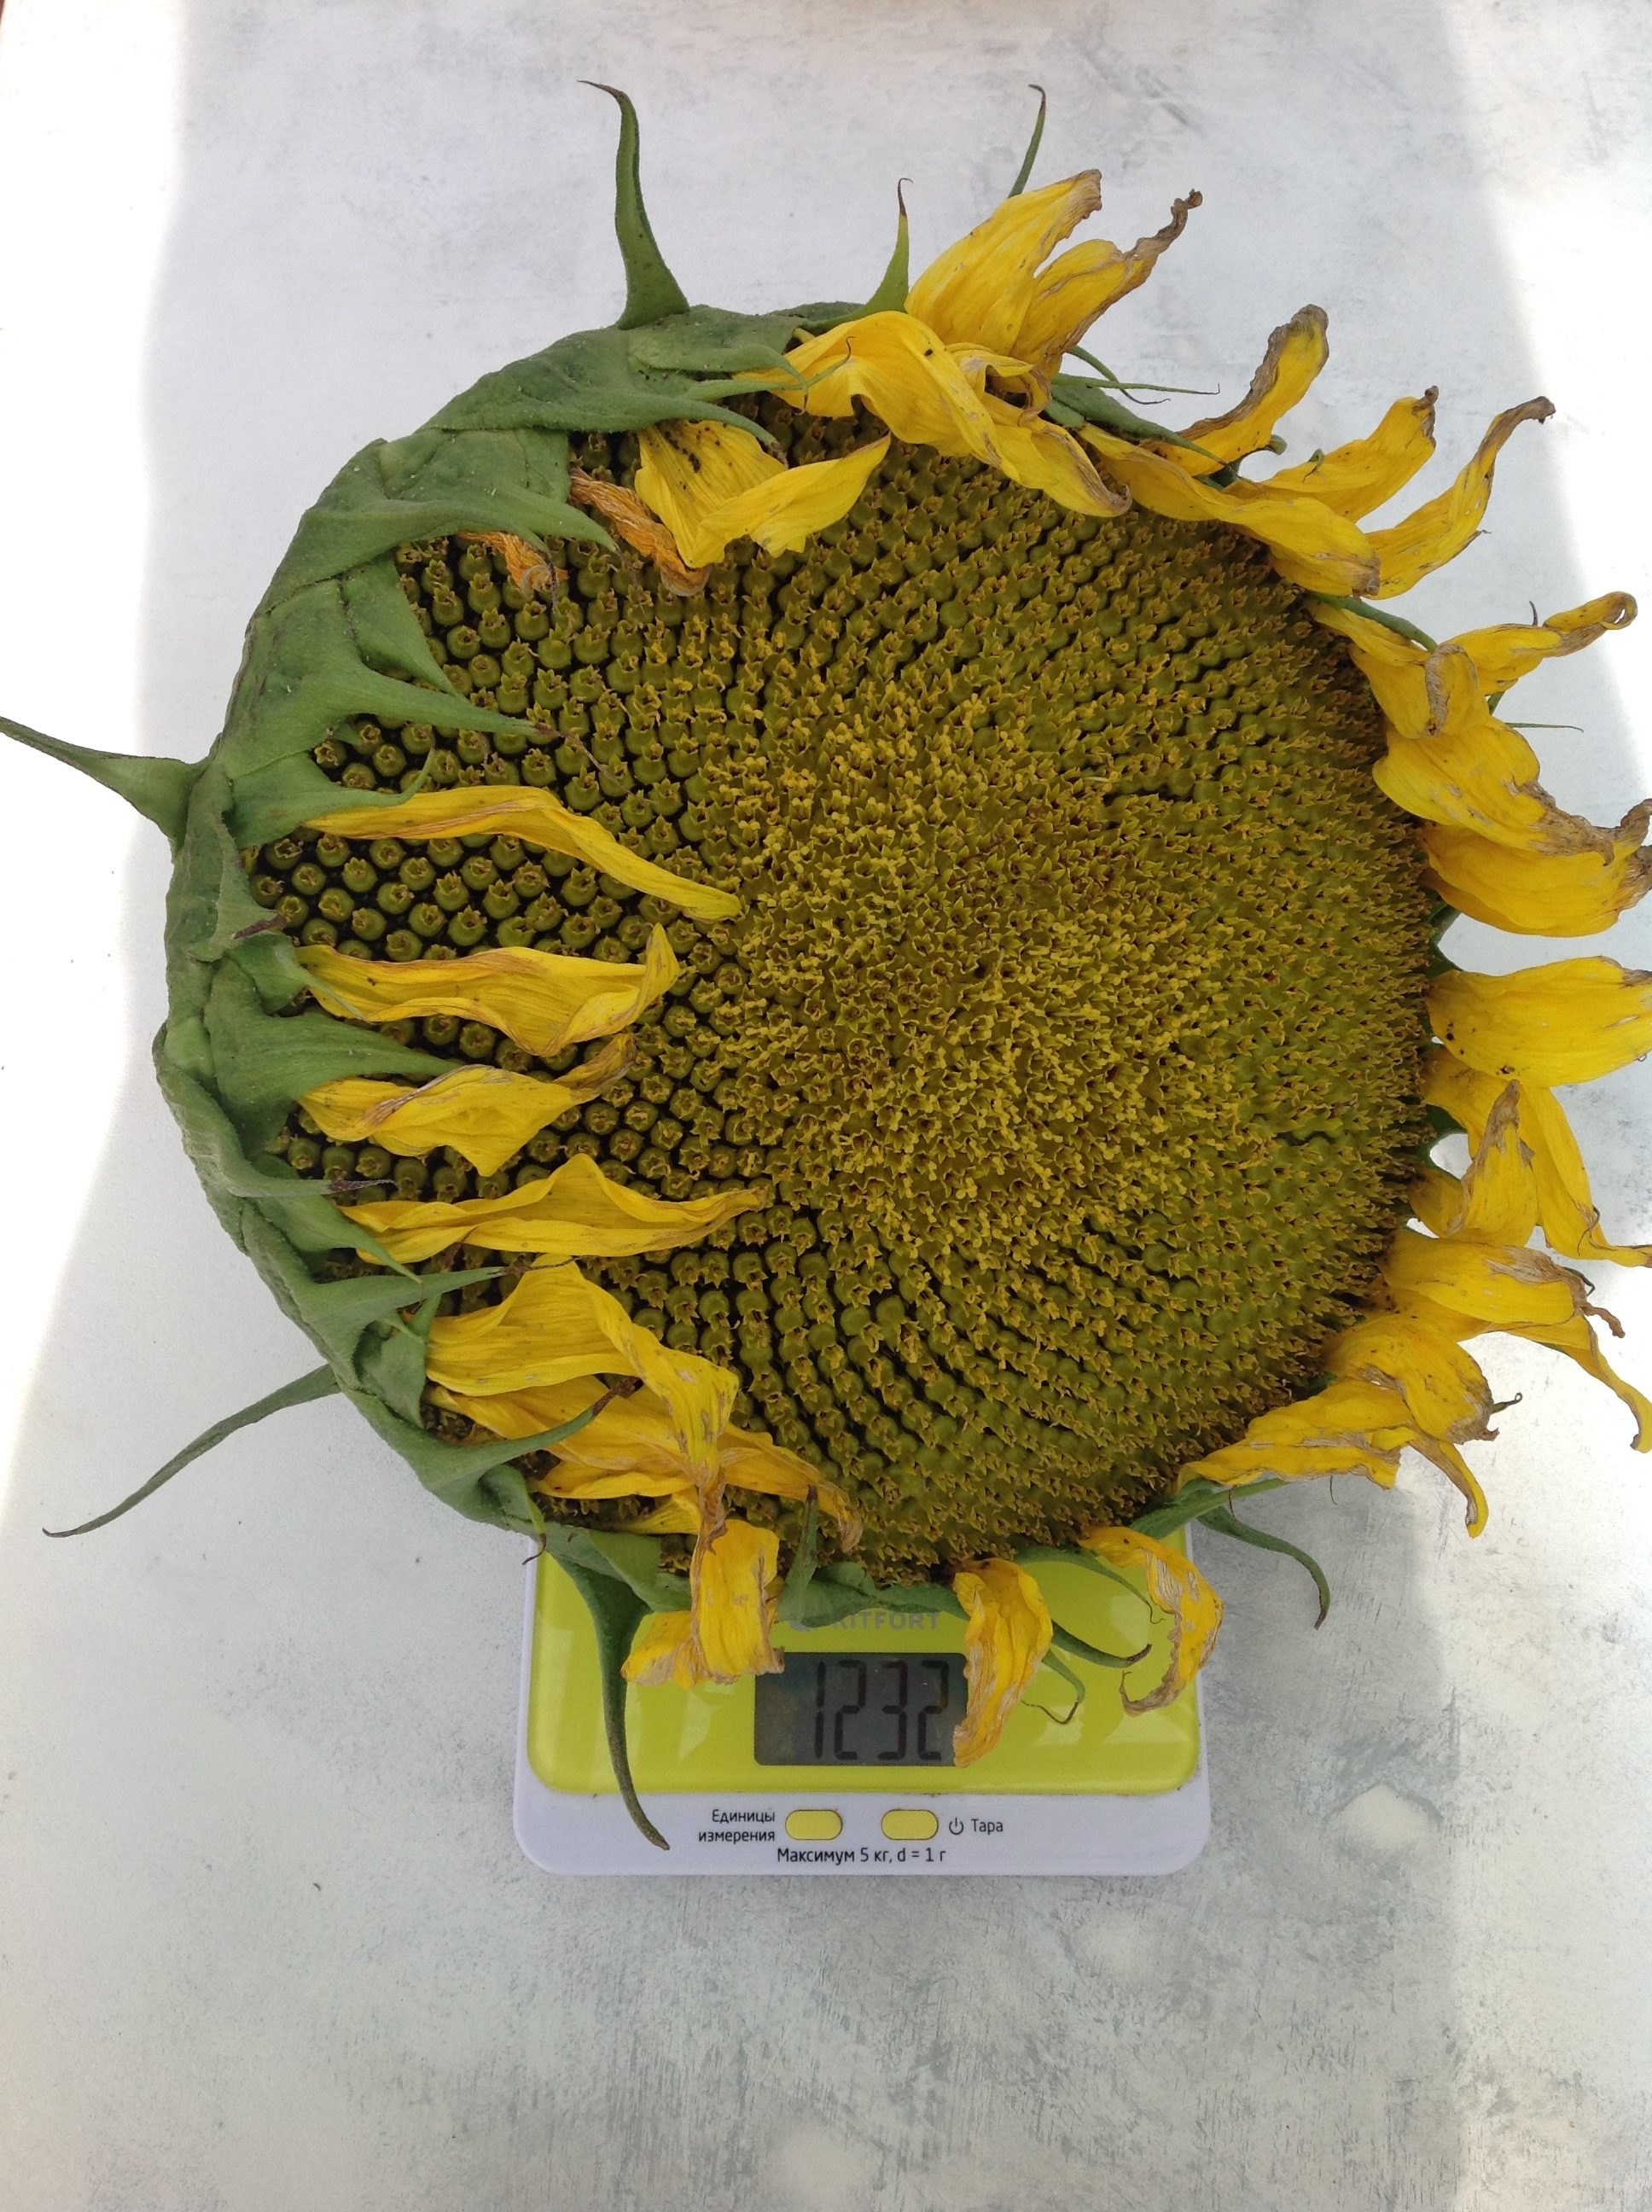 Ortalama bir ayçiçeğinin ağırlığı ne kadardır?